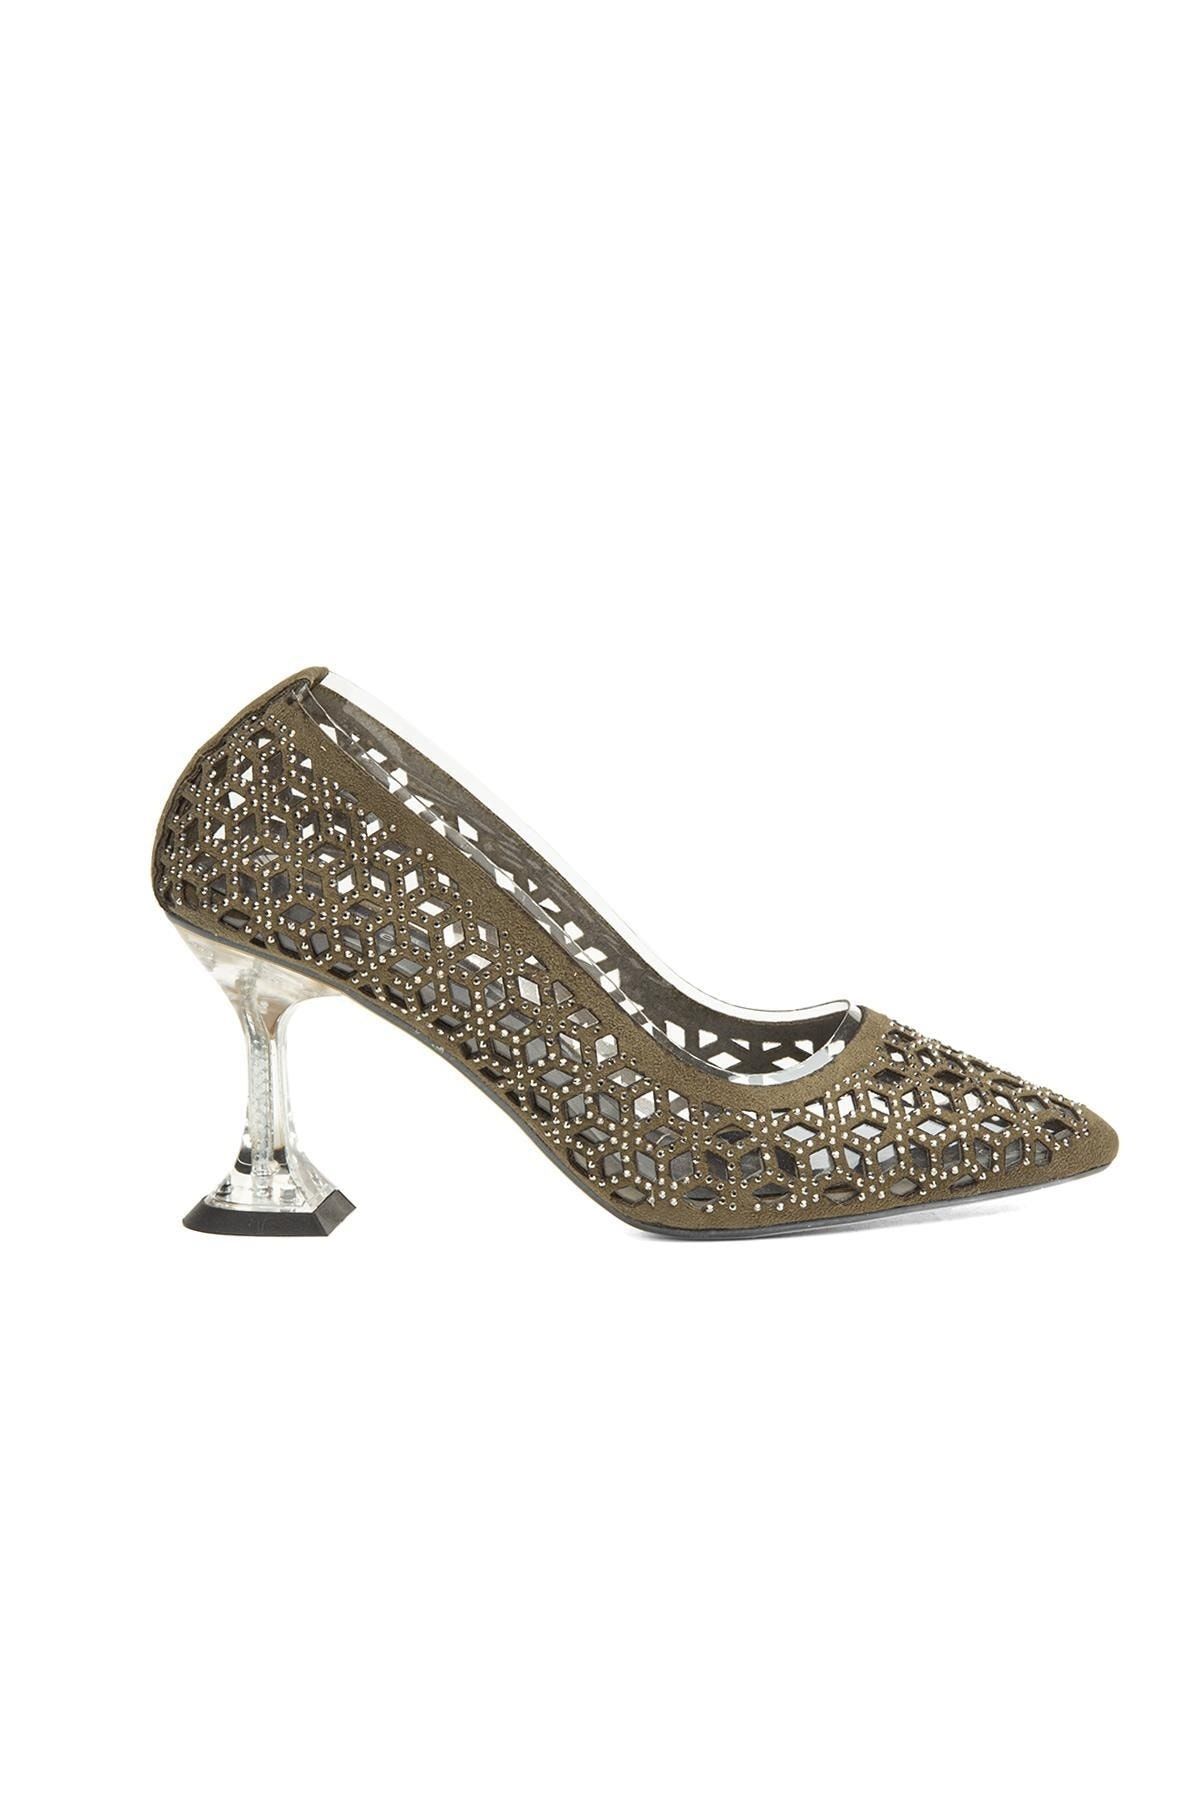 Pierre Cardin ® | Pc-51744-3478 Haki - Kadın Topuklu Ayakkabı